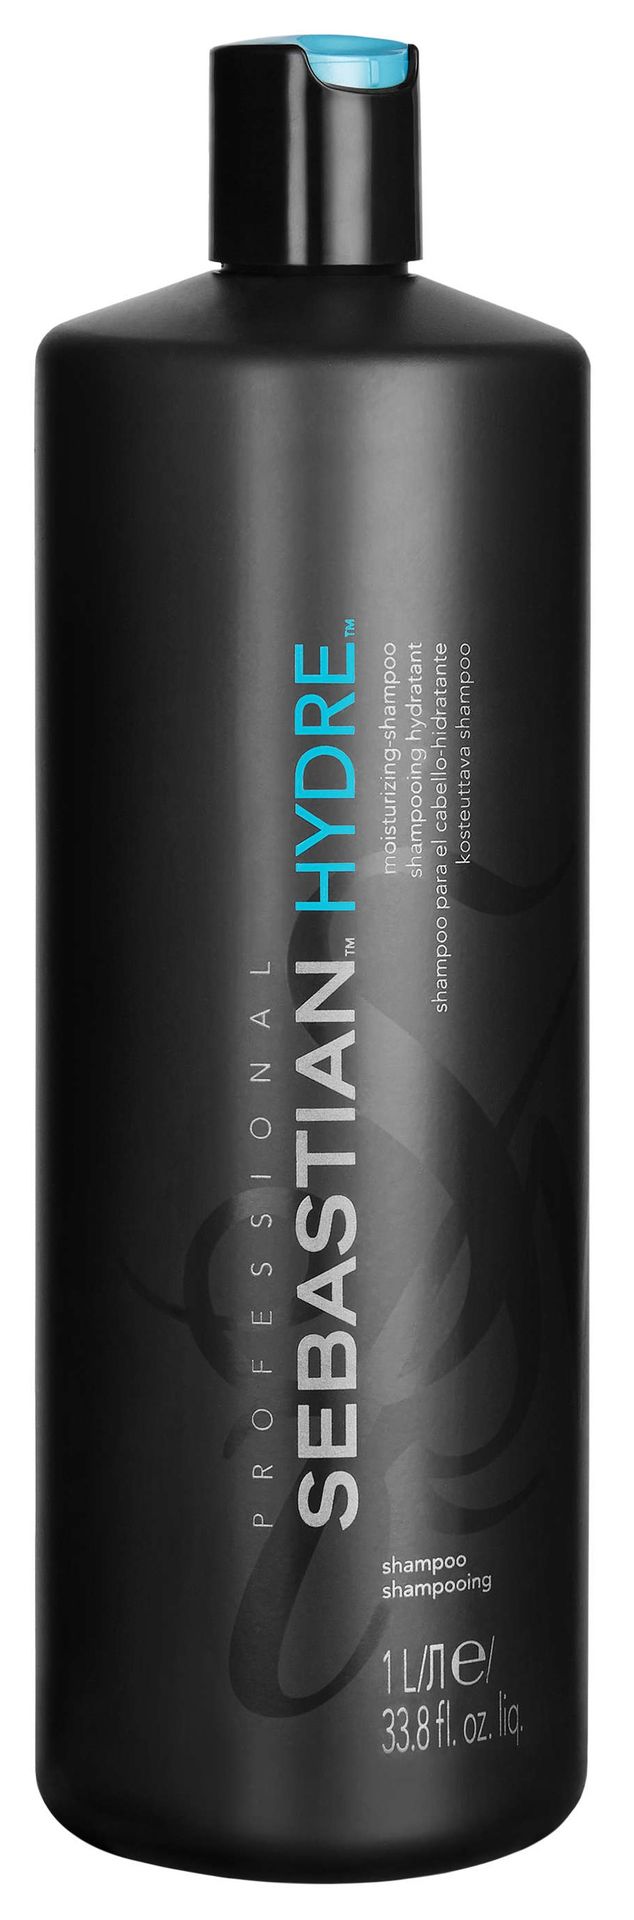 Sebastian Professional Professional Hydre szampon do włosów 1000 ml dla kobiet